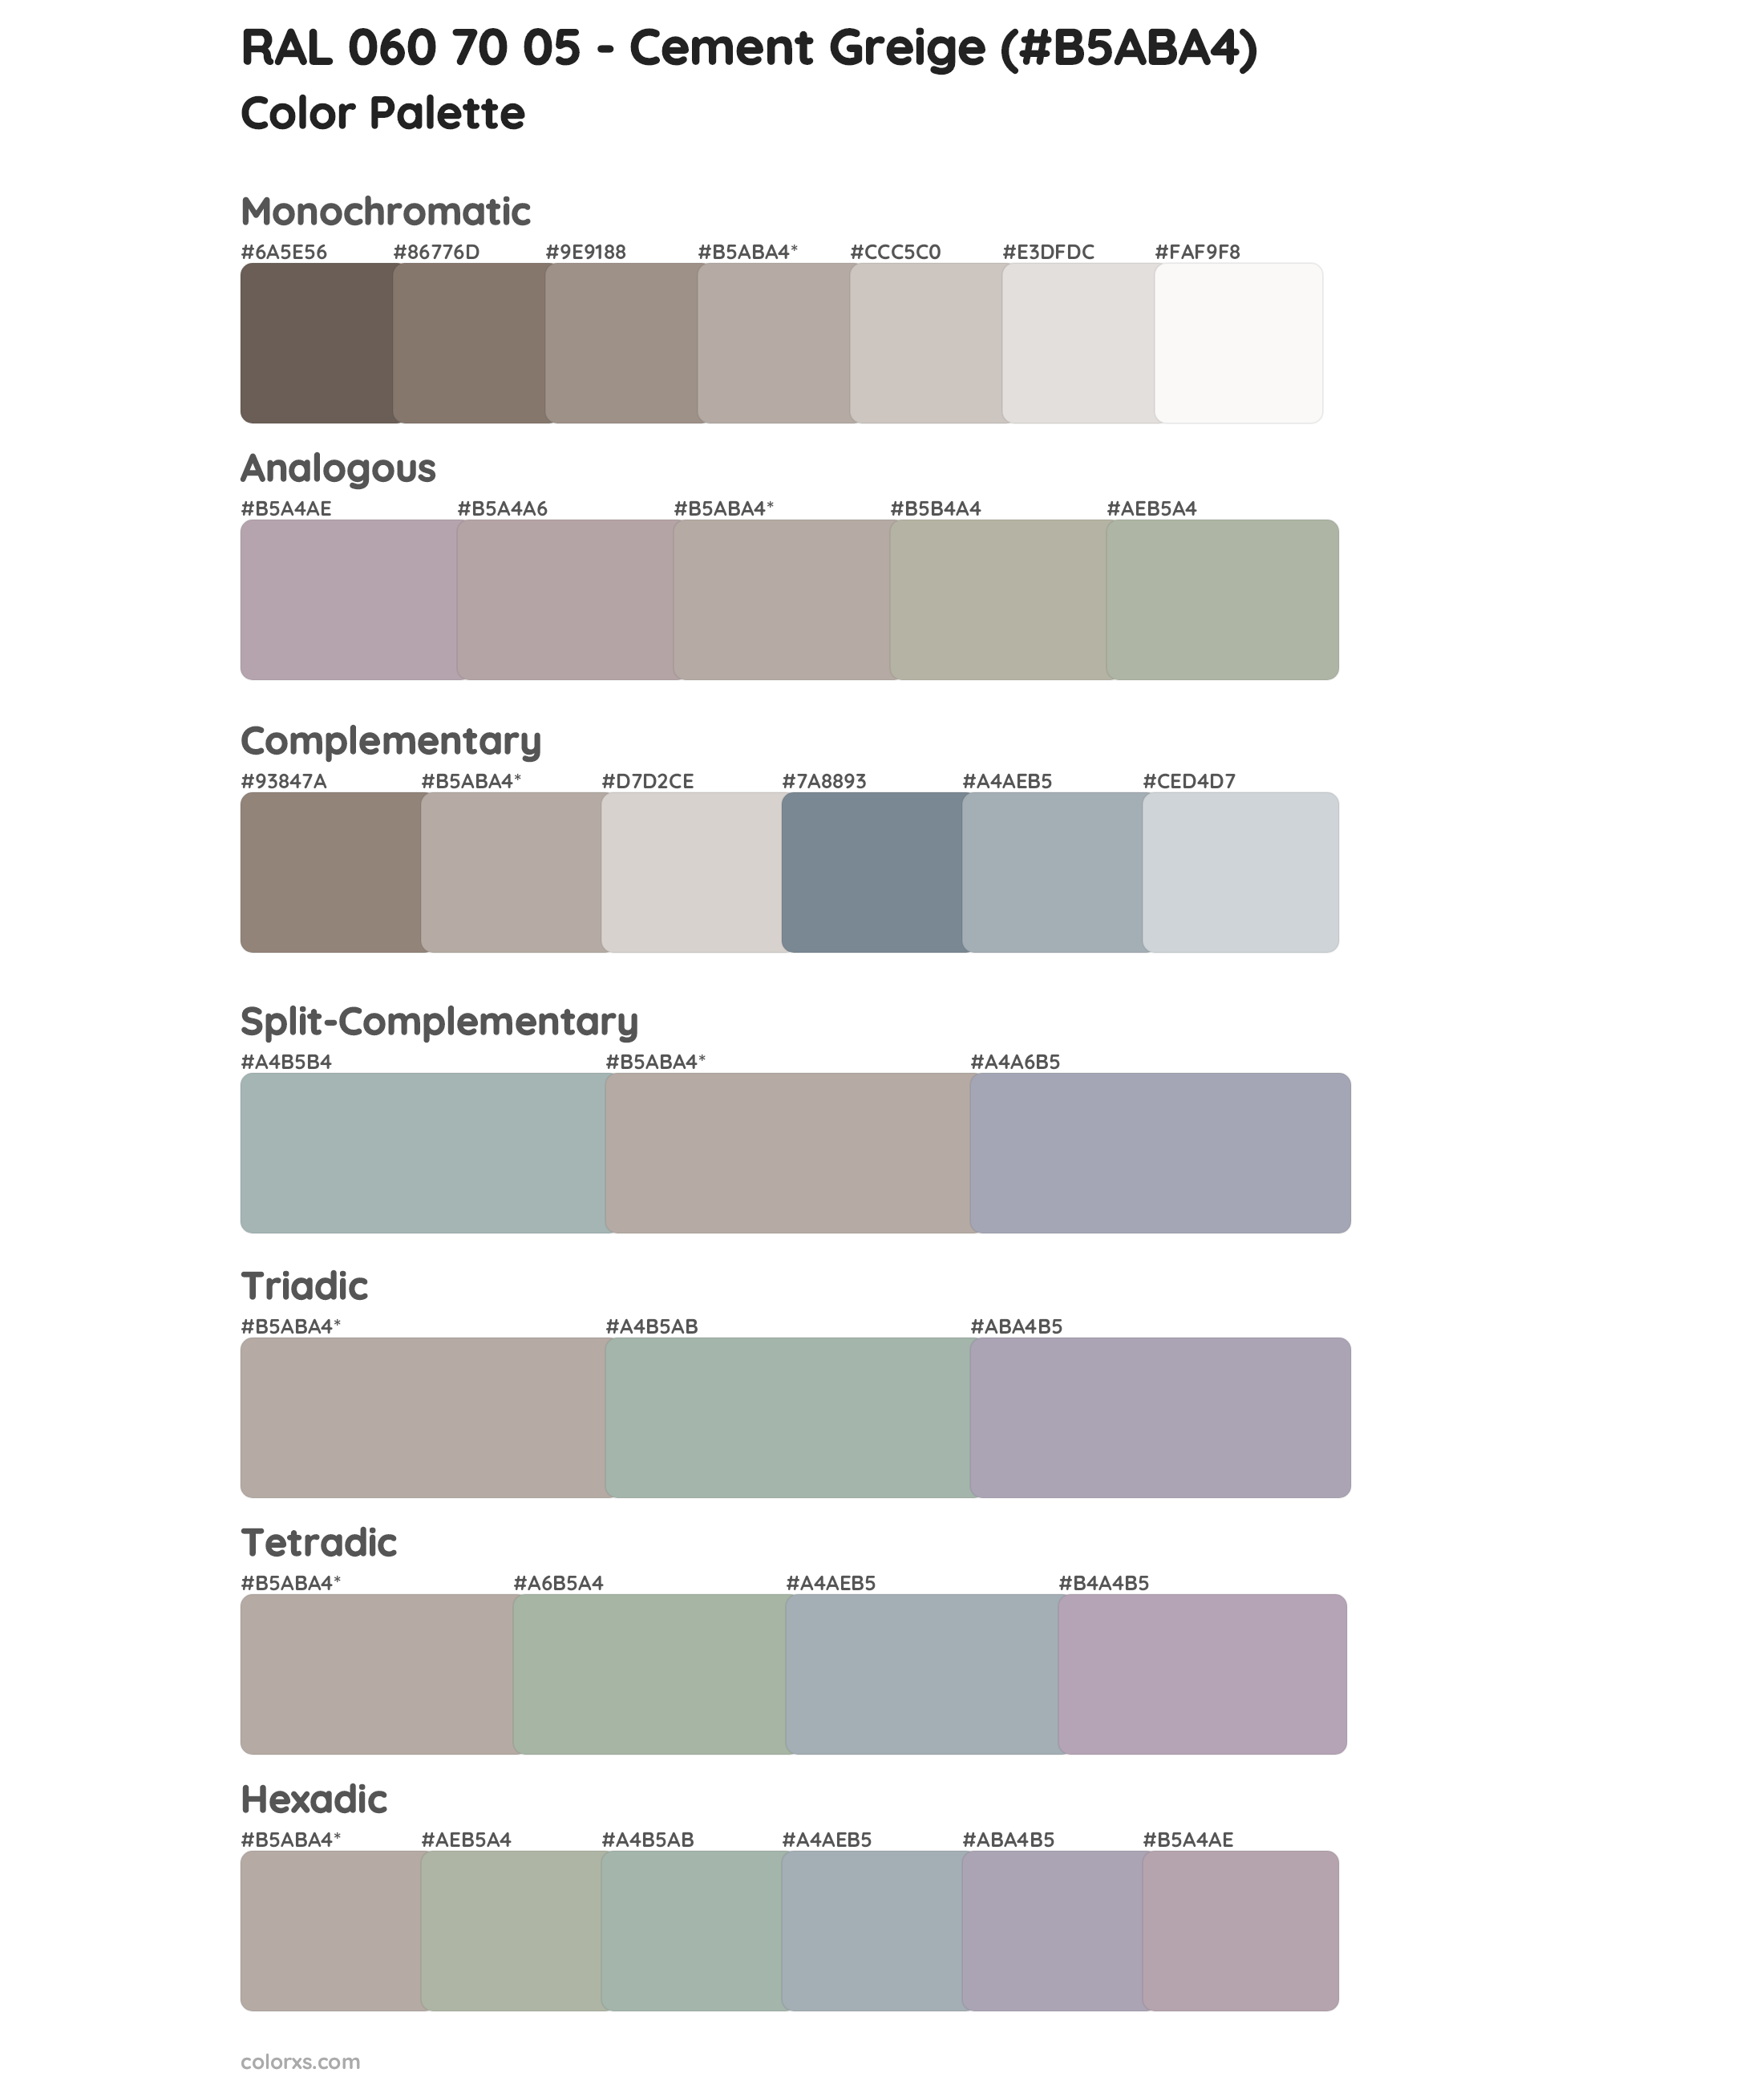 RAL 060 70 05 - Cement Greige Color Scheme Palettes